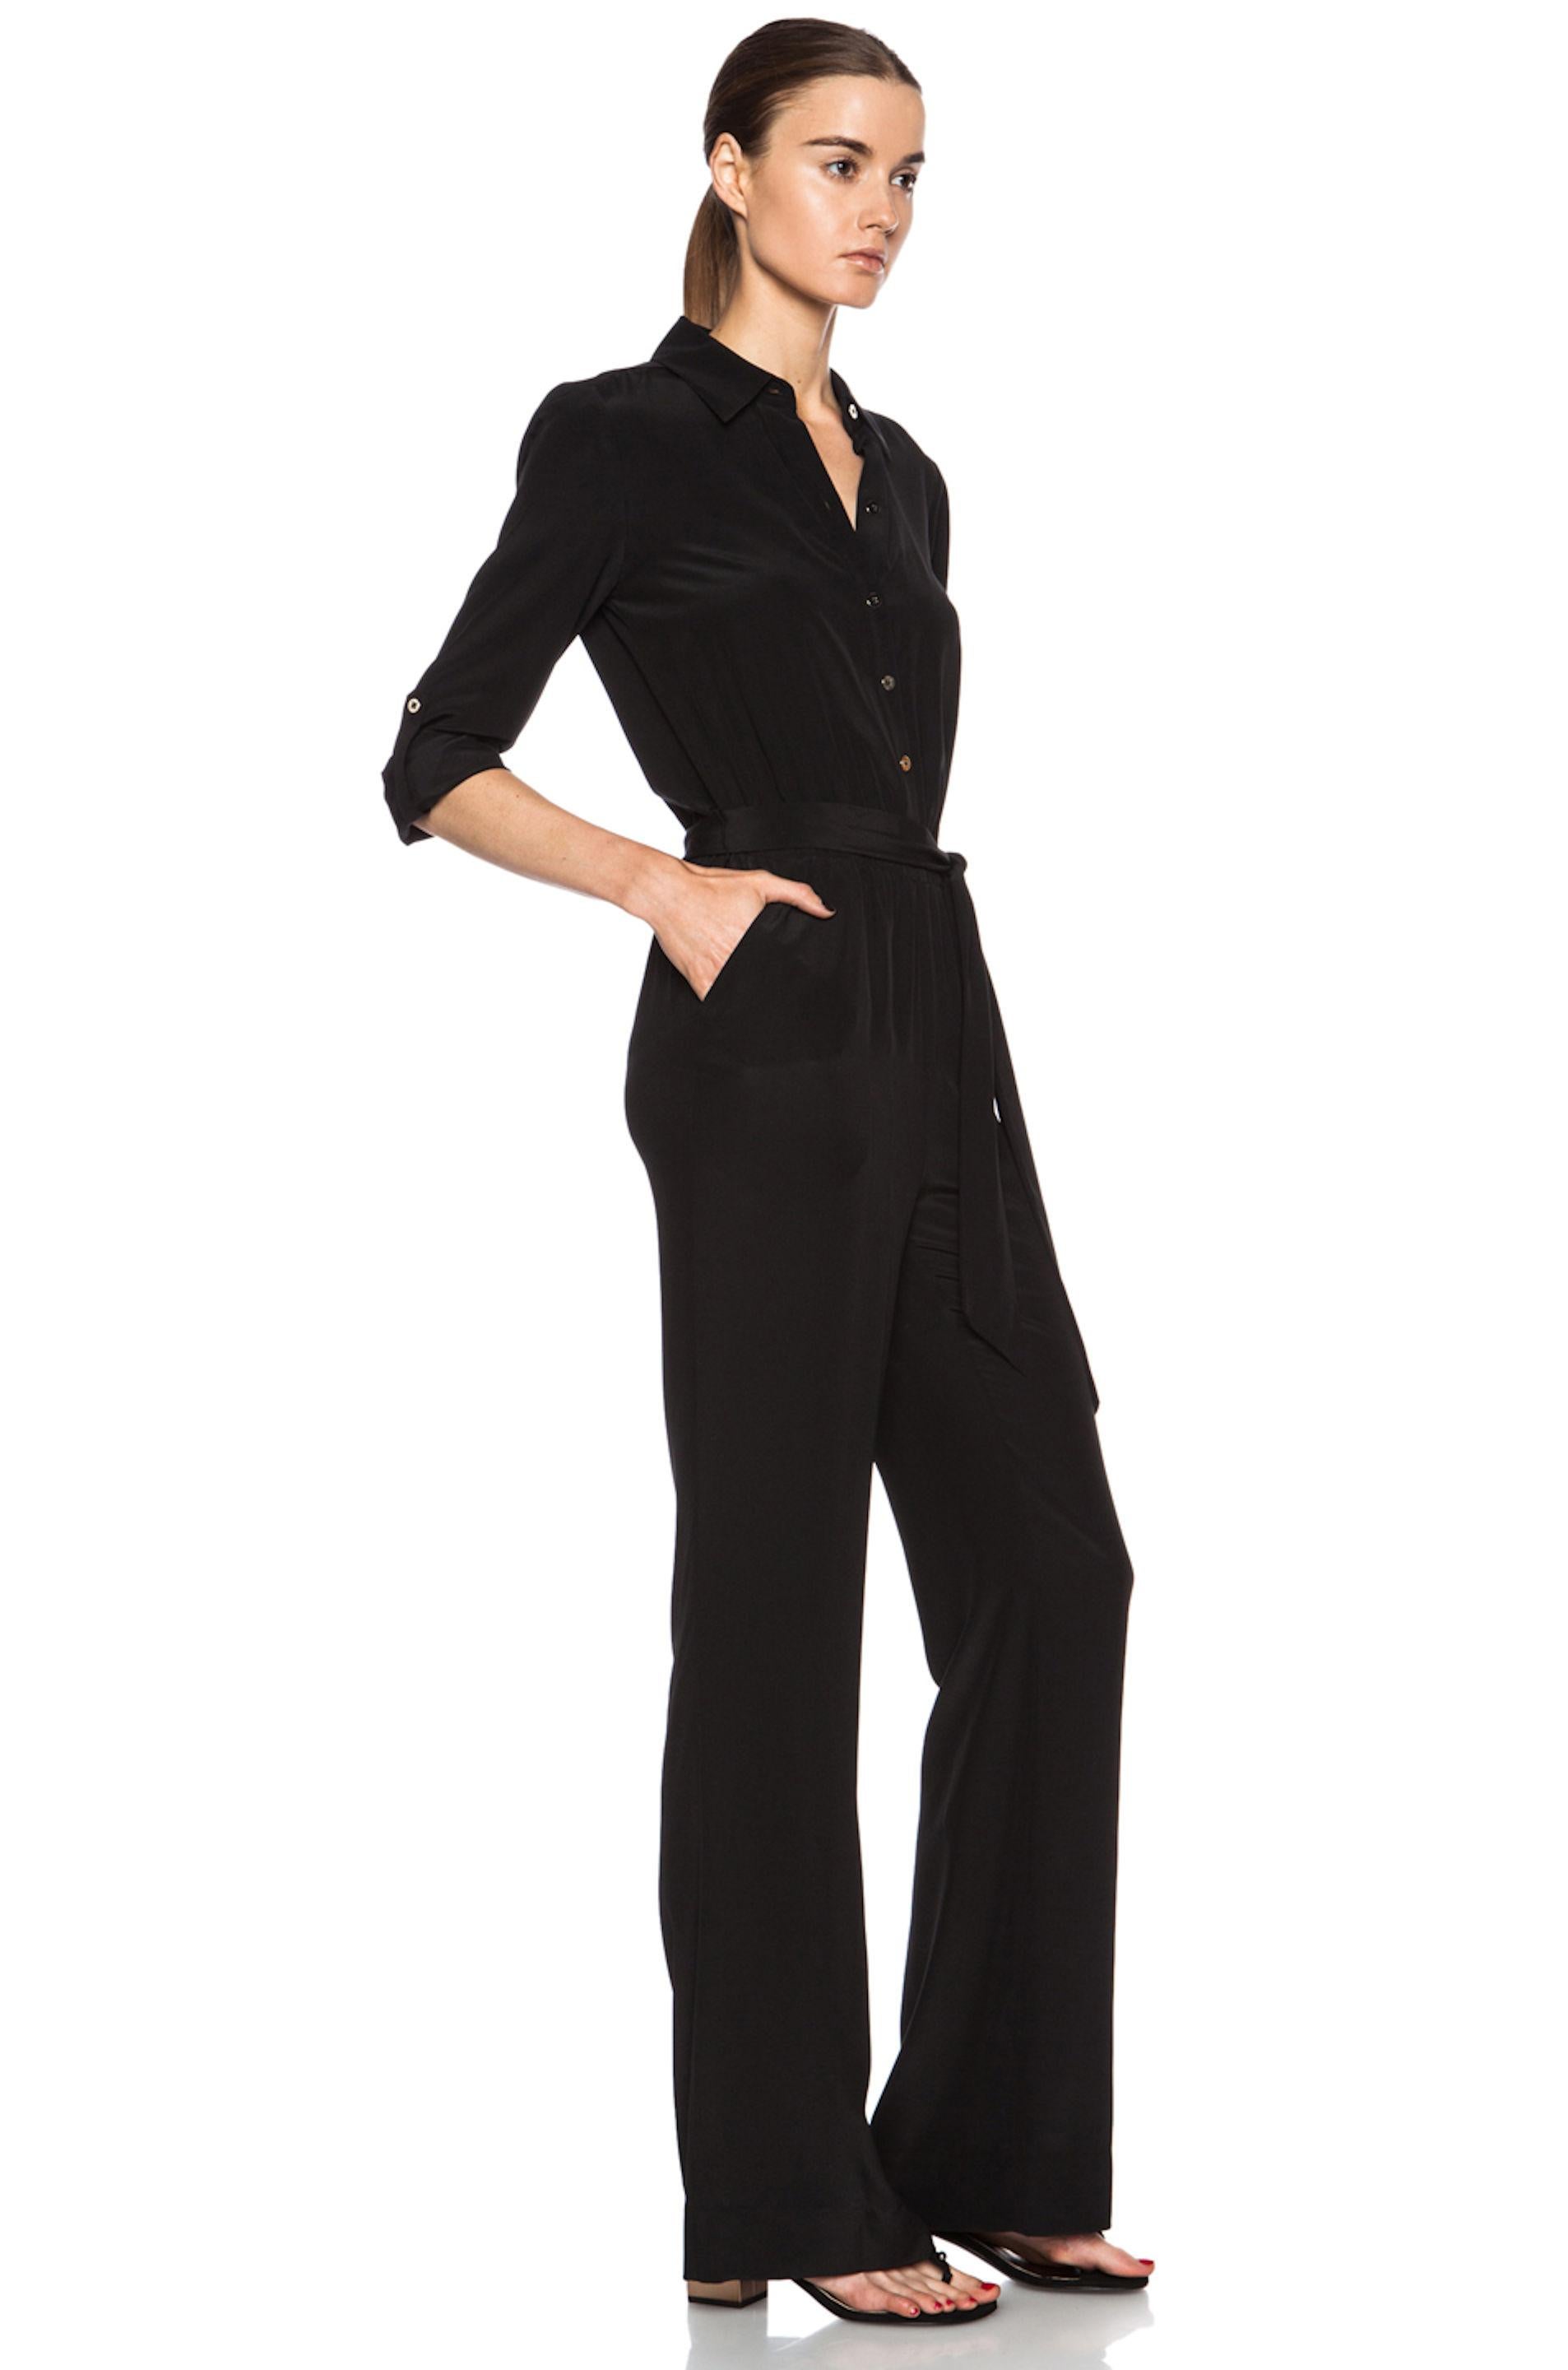 NEW DVF Diane von Furstenberg Black Silk Jumpsuit Overall Size US8 4